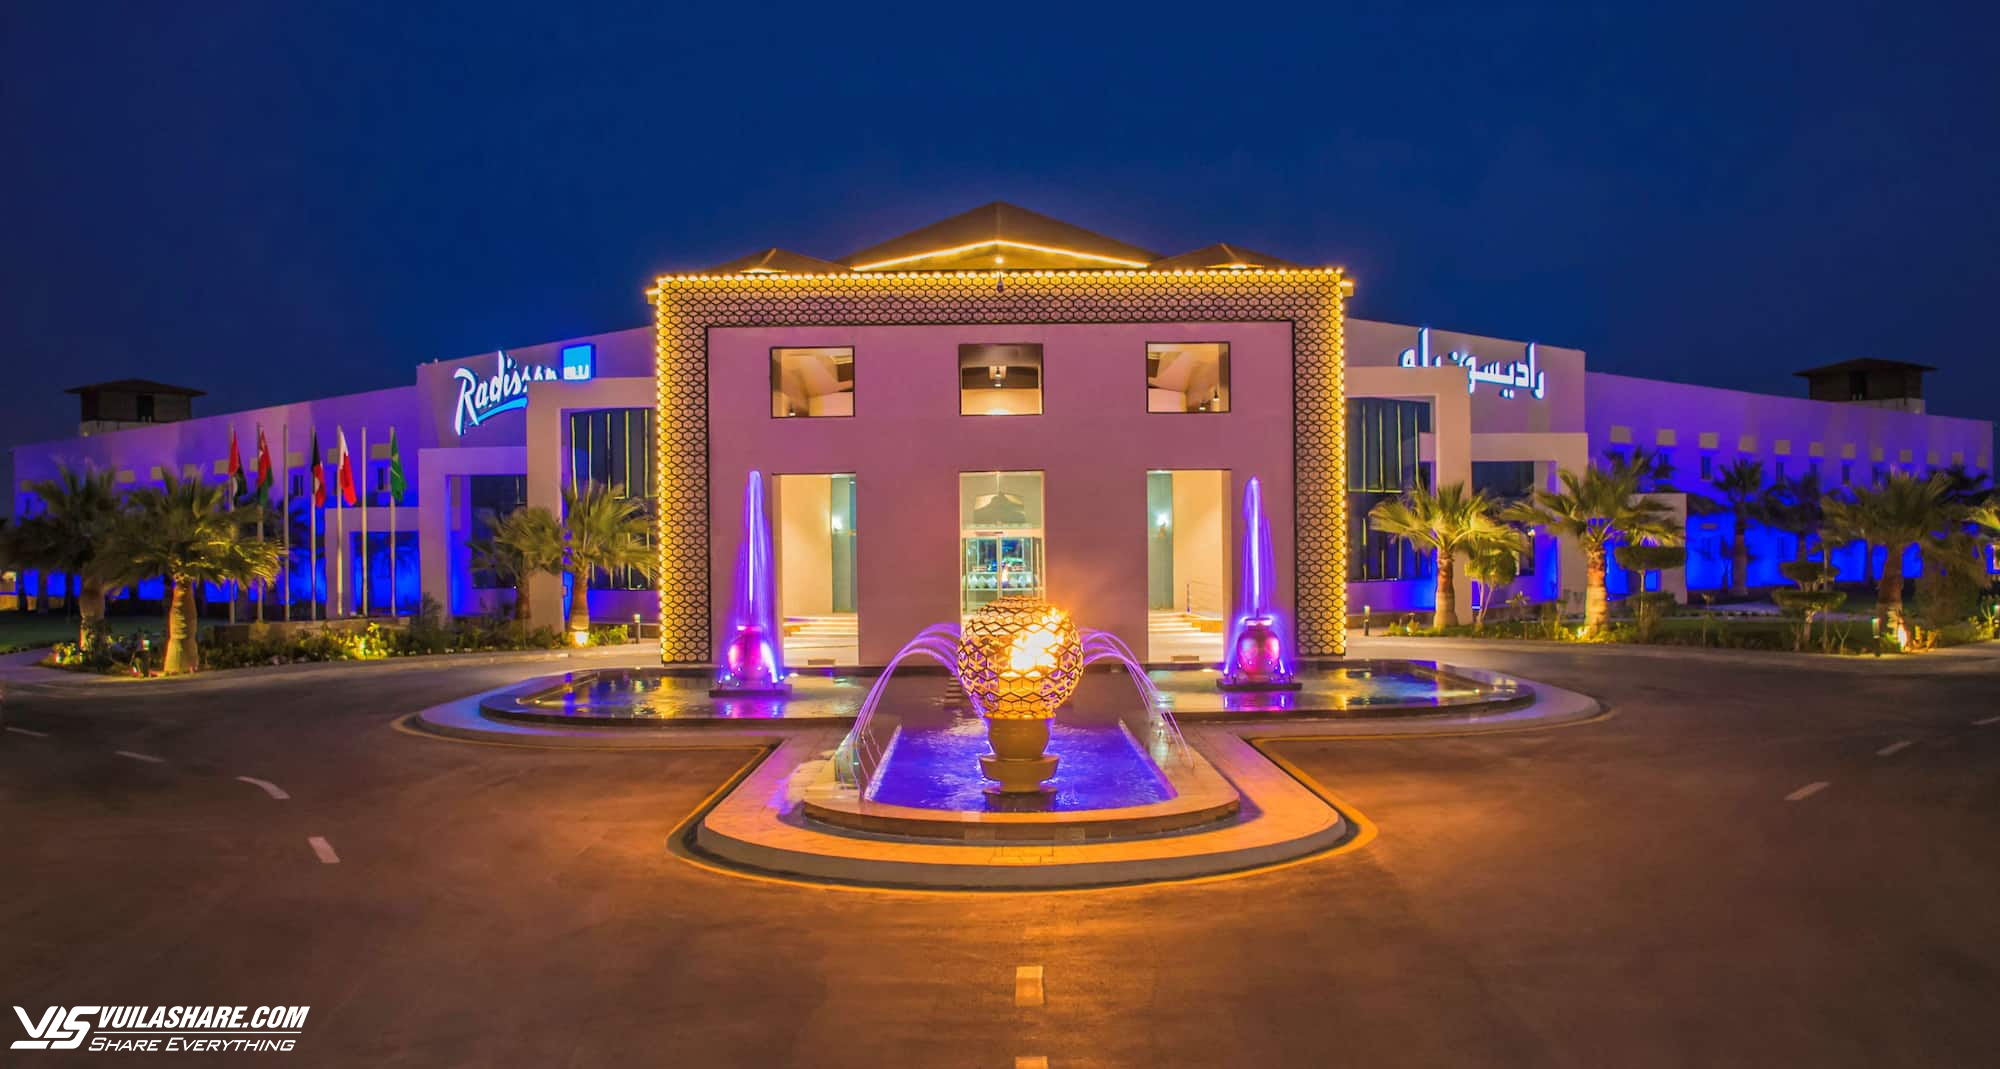 Khu nghỉ dưỡng tiện lợi, có không gian vui chơi cho trẻ tại Ả Rập Xê Út- Ảnh 2.